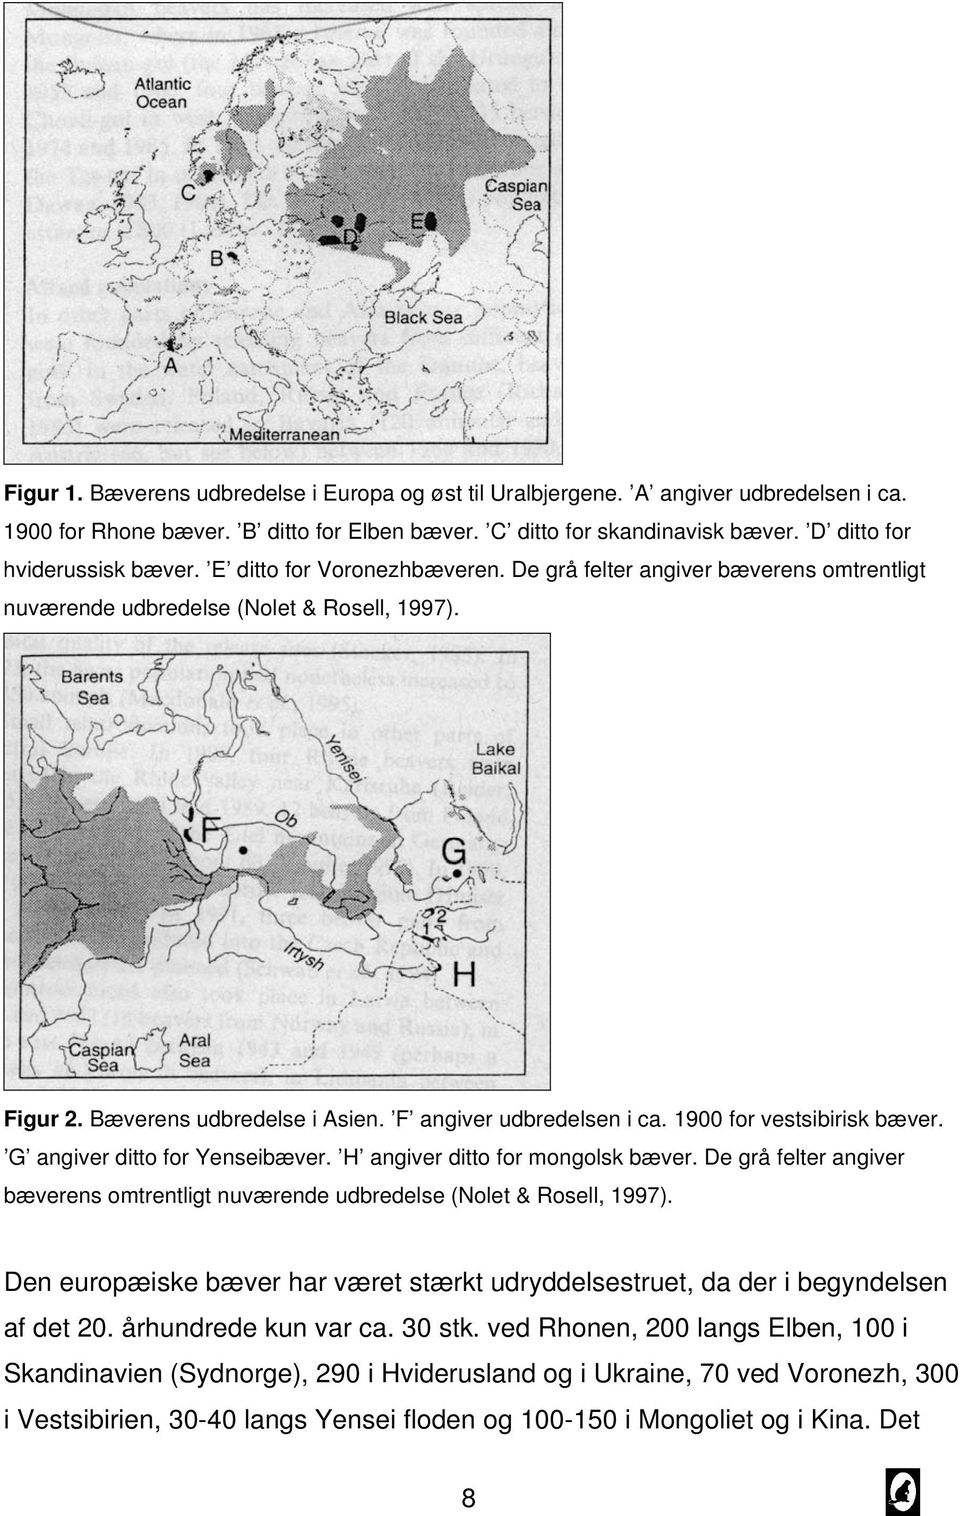 F angiver udbredelsen i ca. 1900 for vestsibirisk bæver. G angiver ditto for Yenseibæver. H angiver ditto for mongolsk bæver.